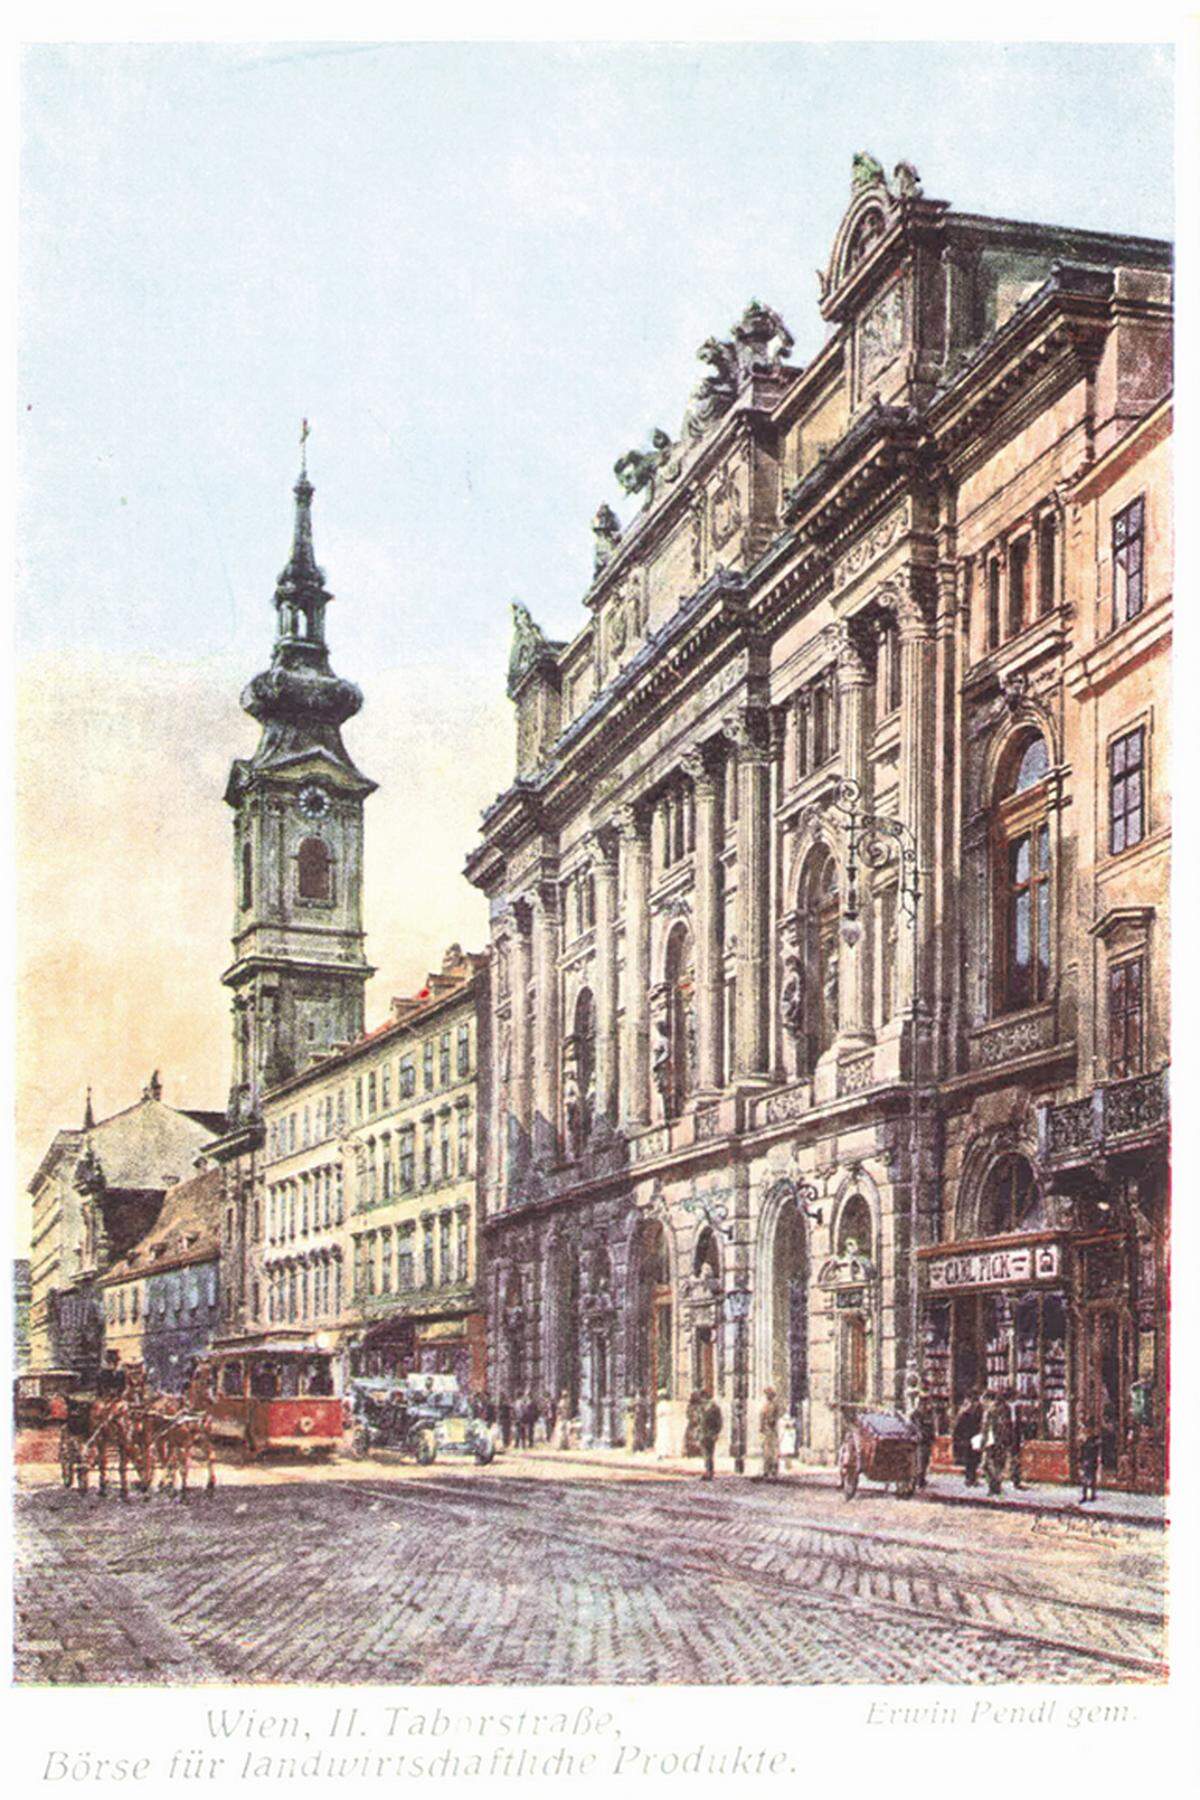 Dieses historische Bild zeigt das Hotel Stefanie, damals erst dreistöckig, links neben der damaligen Börse für landwirtschaftliche Produkte.